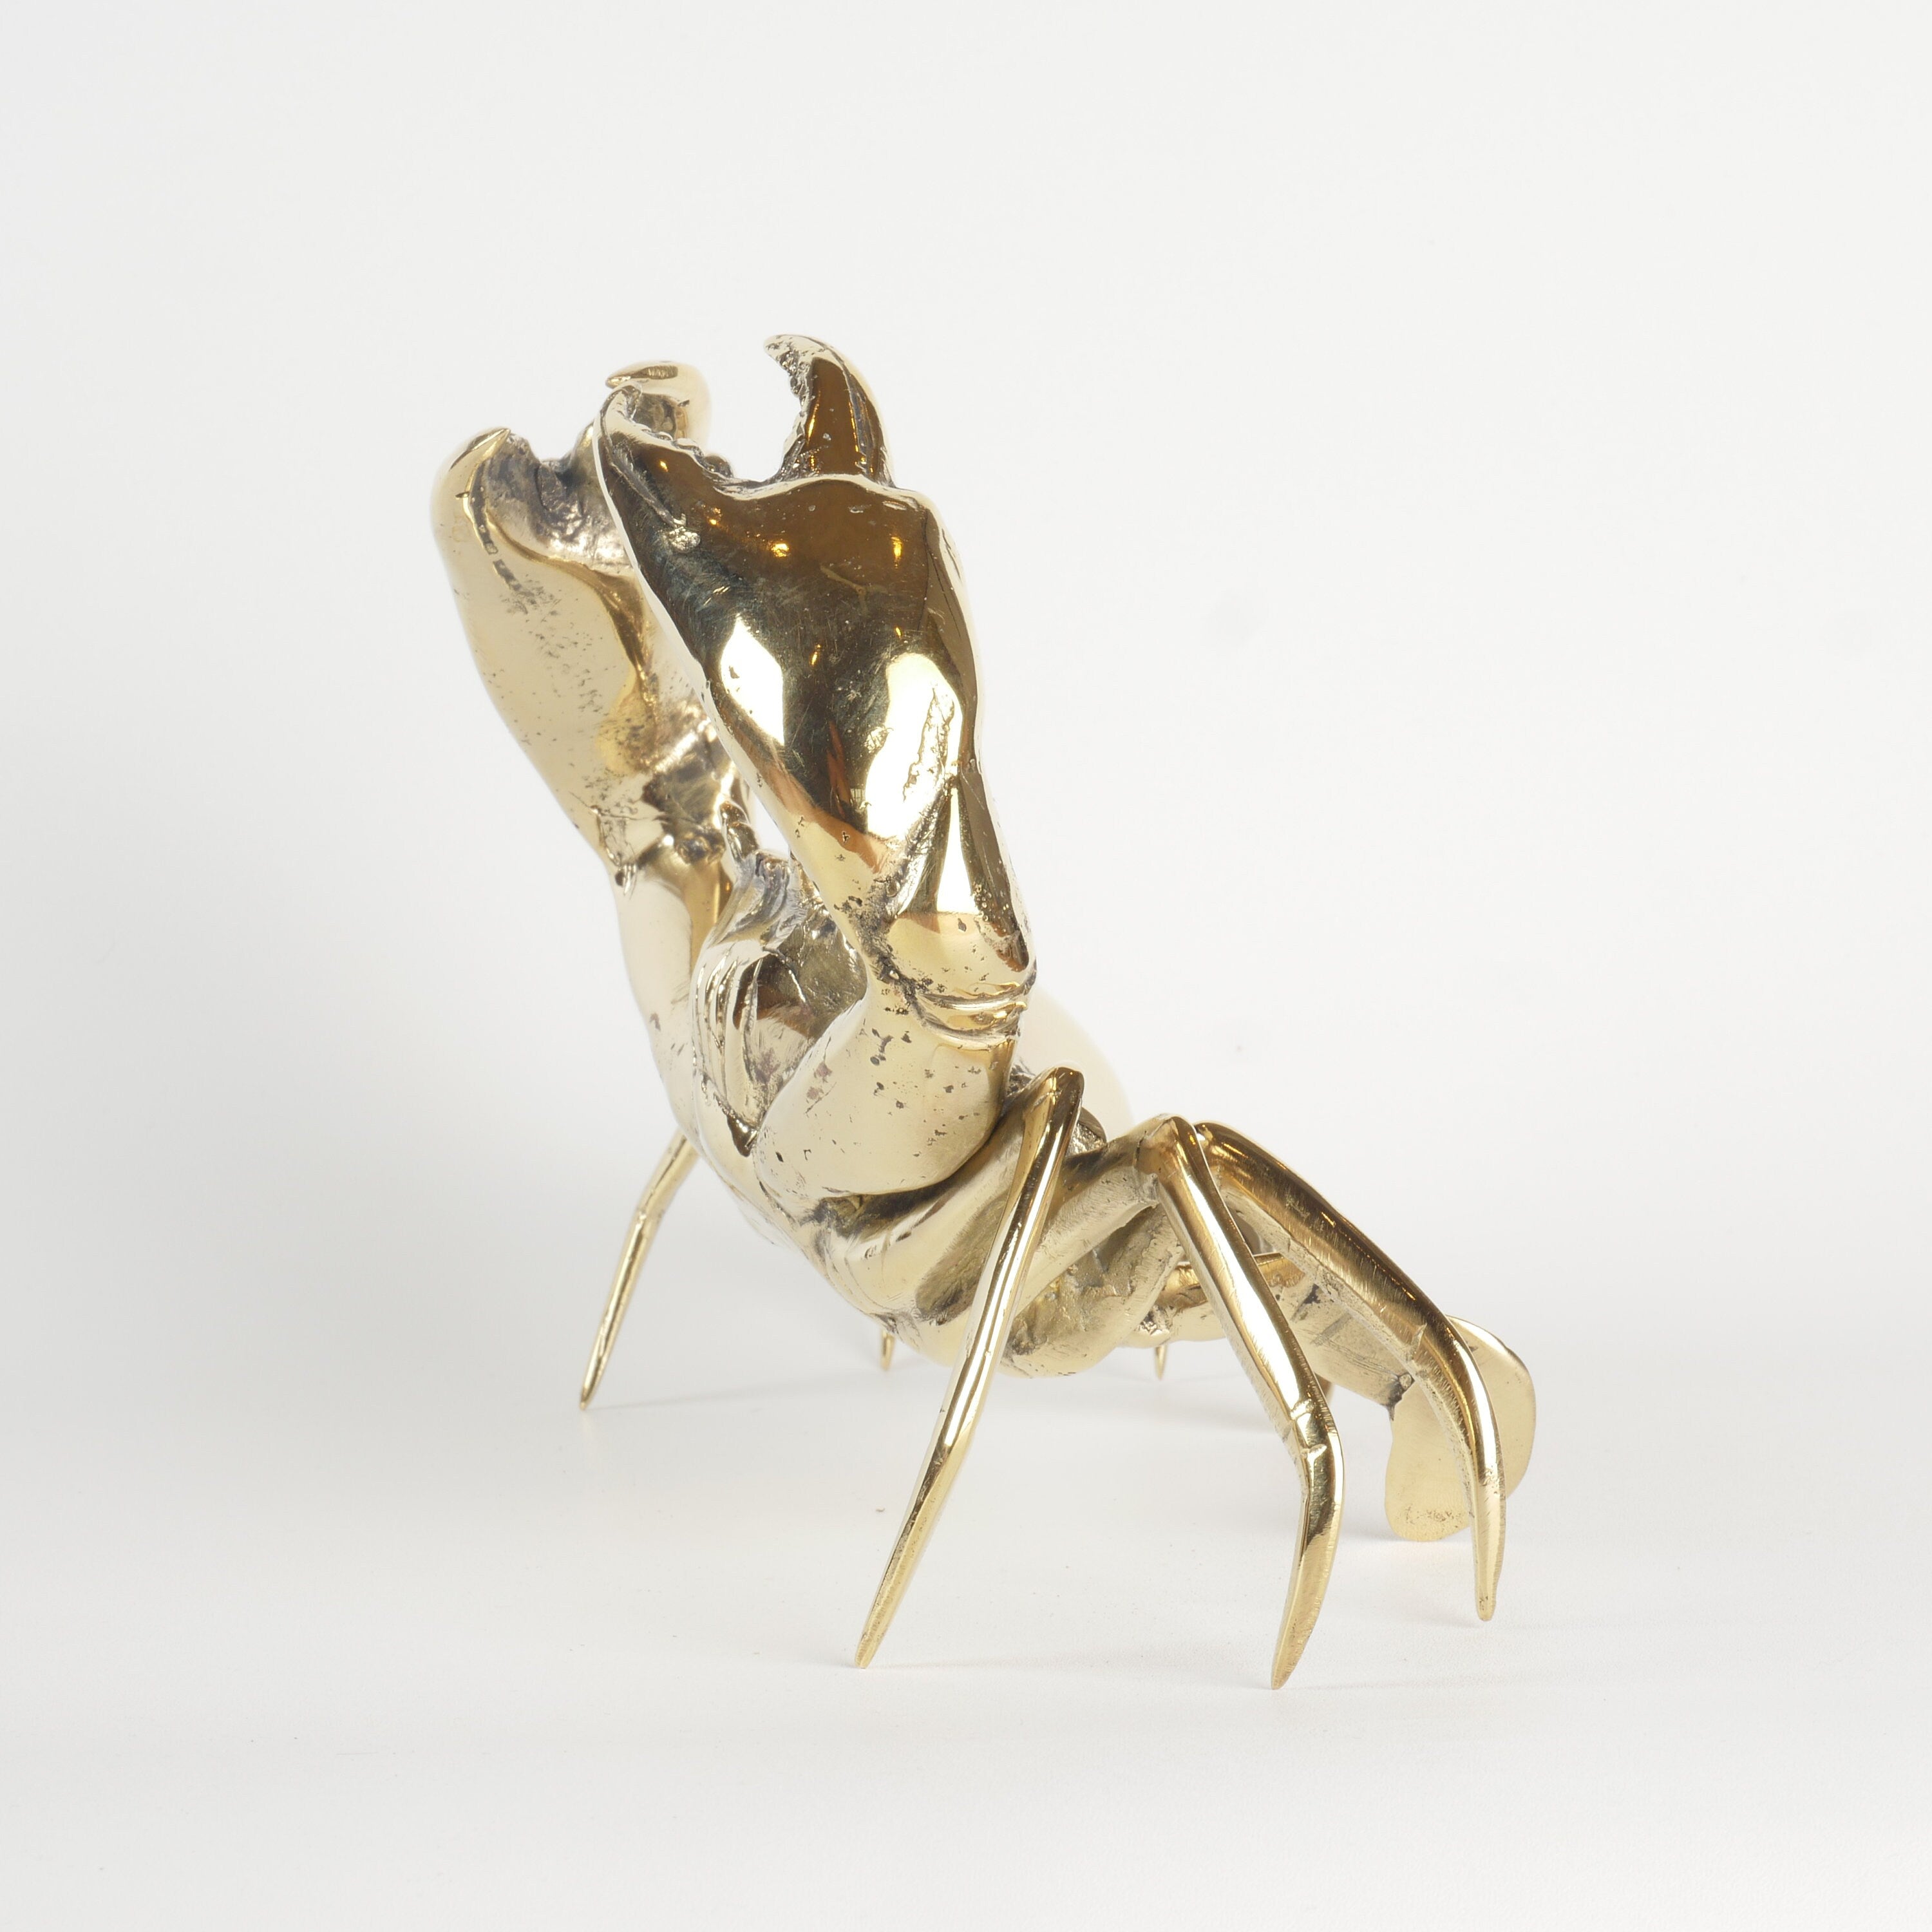 Mr Pinchy Crab - Brass Crab - Brass Crab Figure - Brass Crab Statue - Brass Crab Deco - Boho Crab -